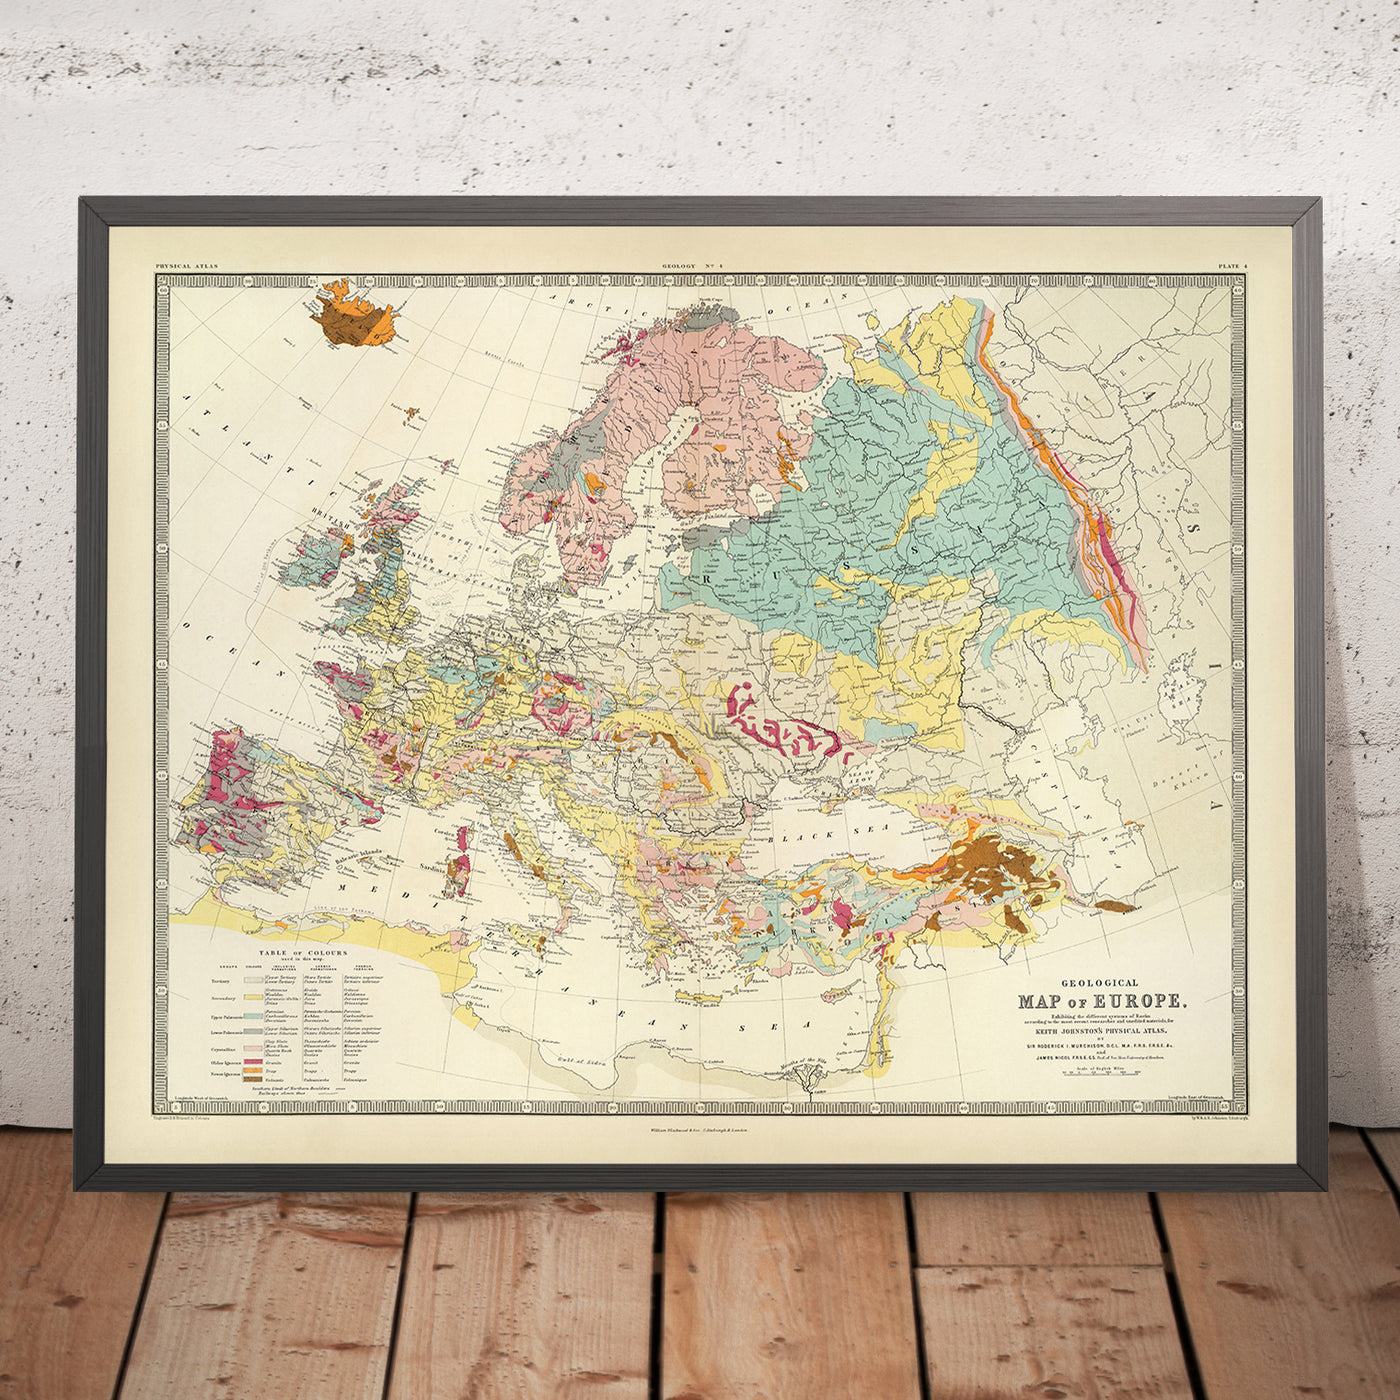 Alte geologische Karte von Europa von AK Johnston, 1856: Geologische Karte von Bergen, Felsen, Schichten